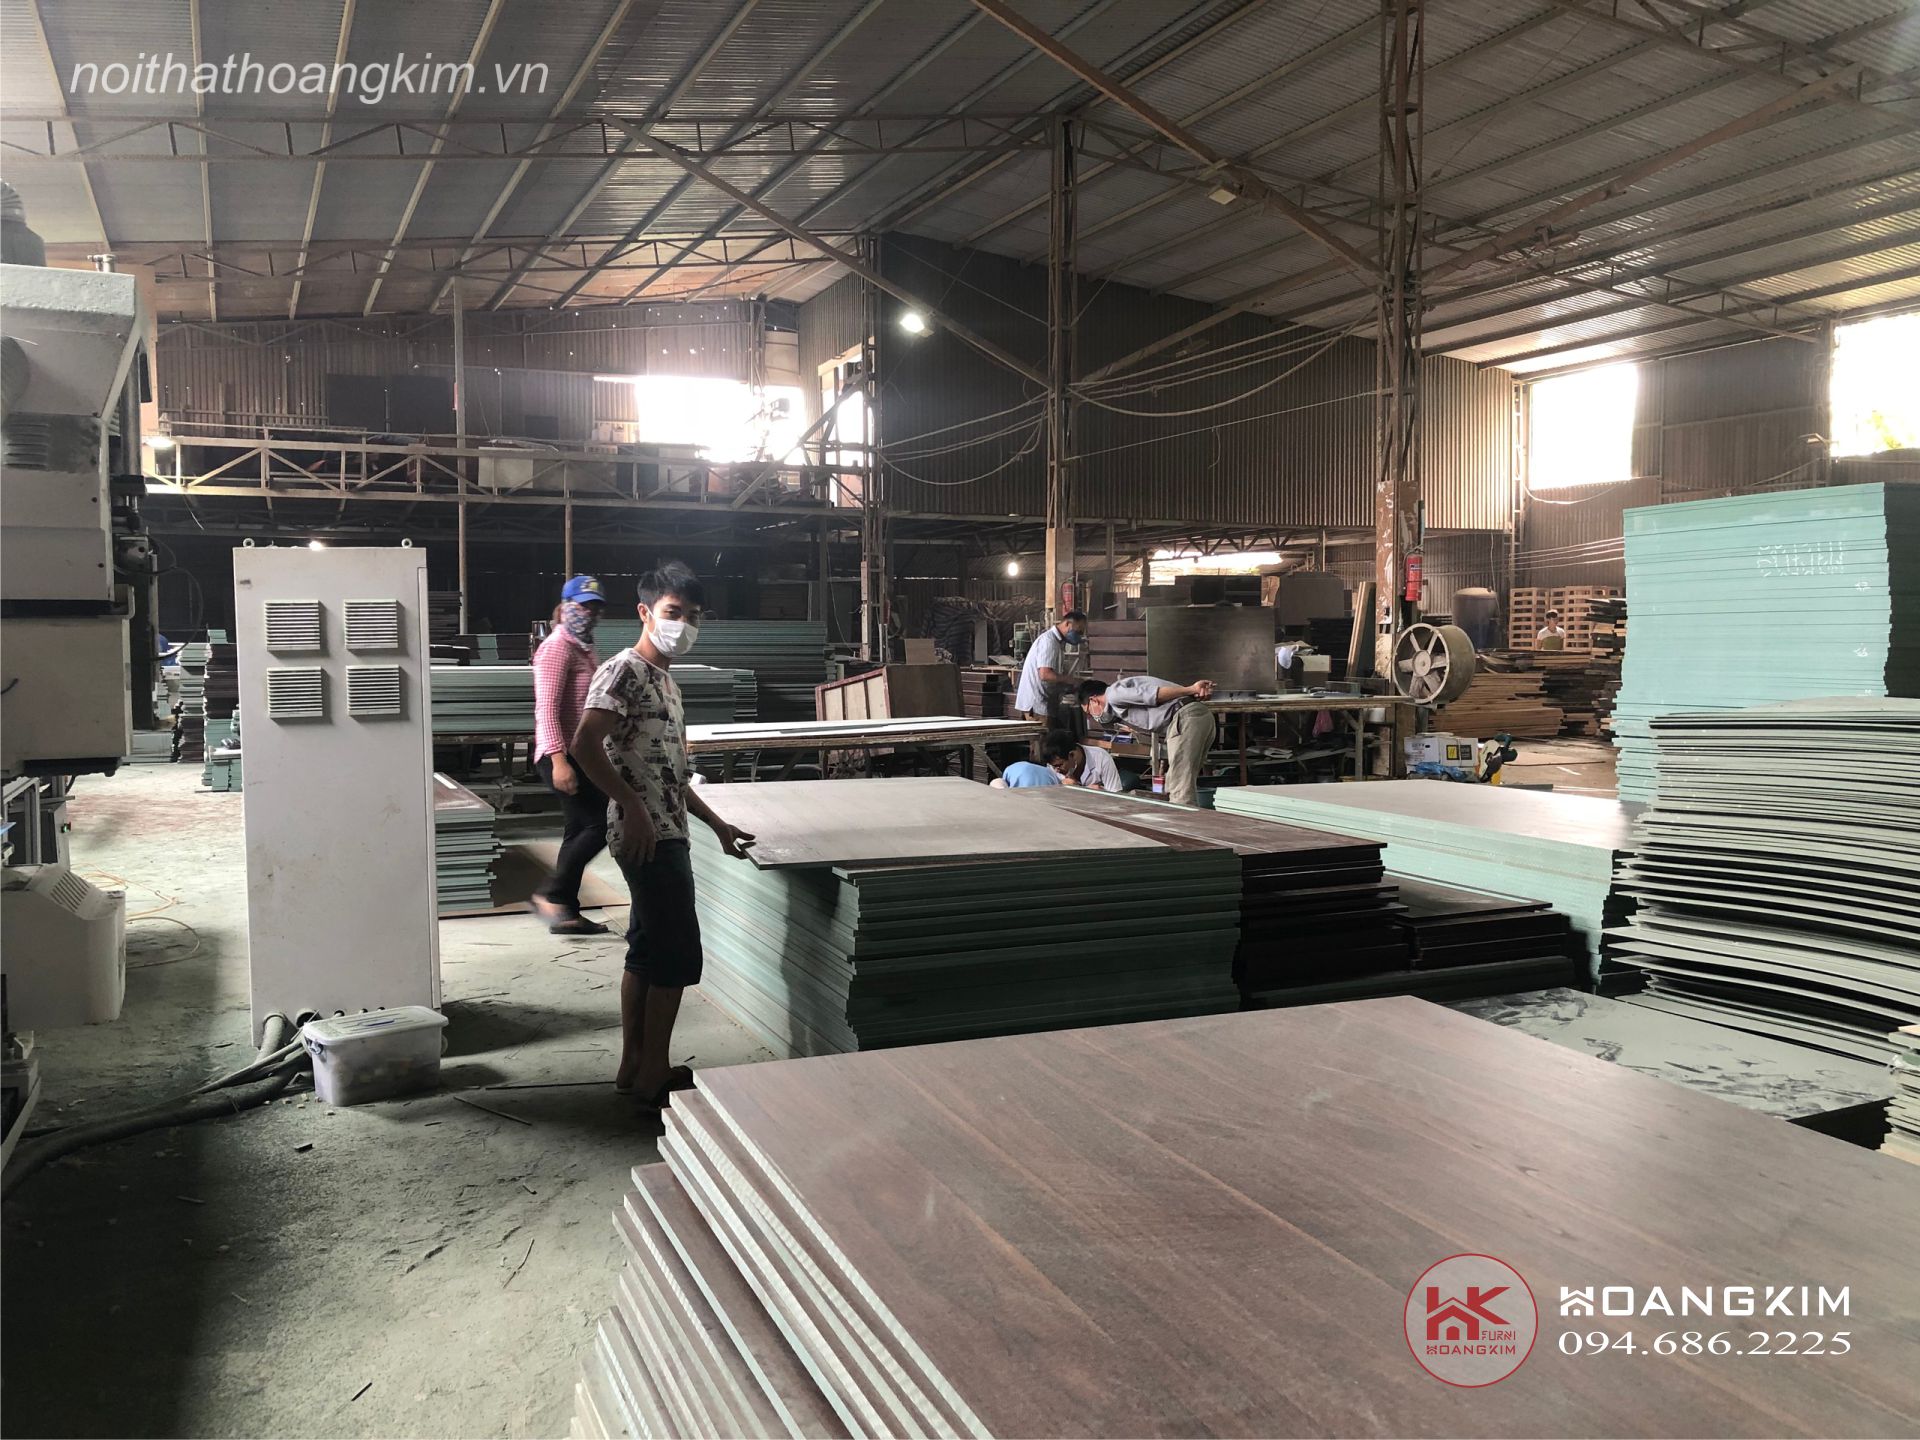 Xưởng sản xuất gỗ tại Hà Nội